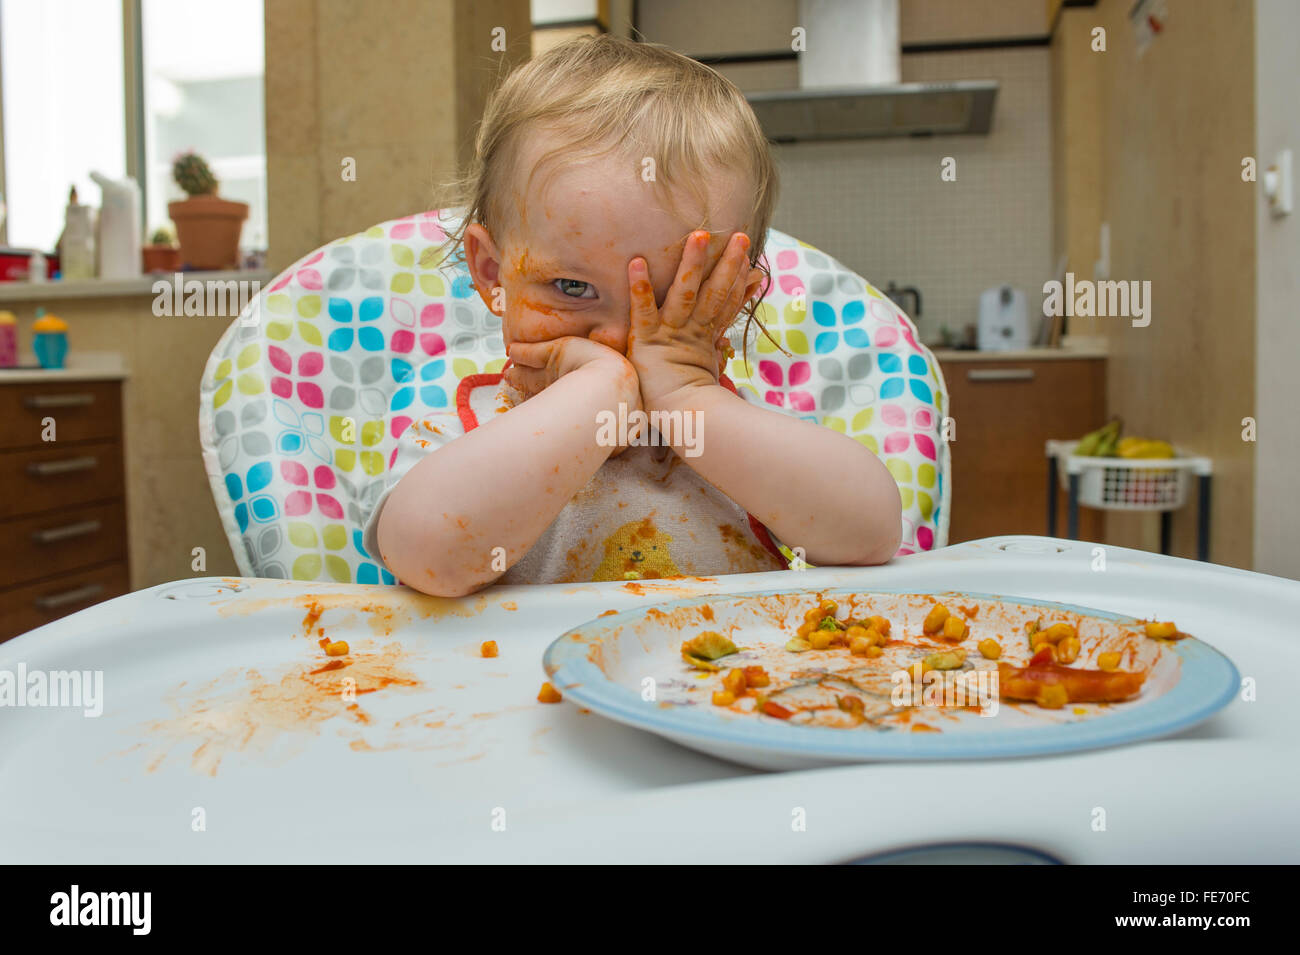 Ein kleines Mädchen (Alter 15 Monate) isst eine Mahlzeit aus Mais und Tomatensauce in gewissem Sinne chaotisch und spielt mit ihr Essen auf einem hohen Stuhl Stockfoto